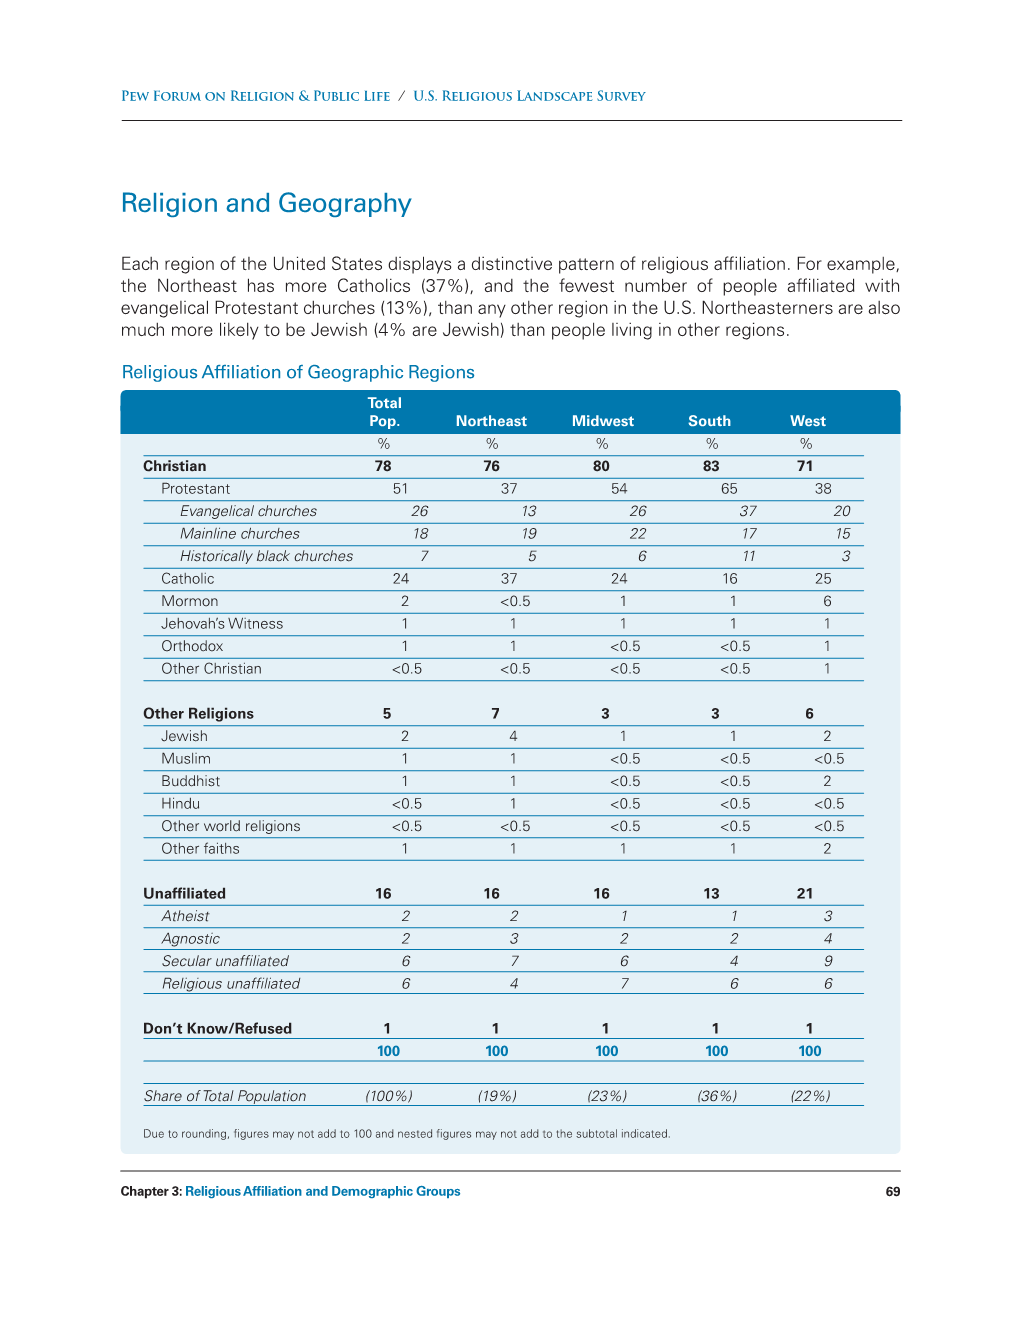 U.S. Religious Landscape Survey